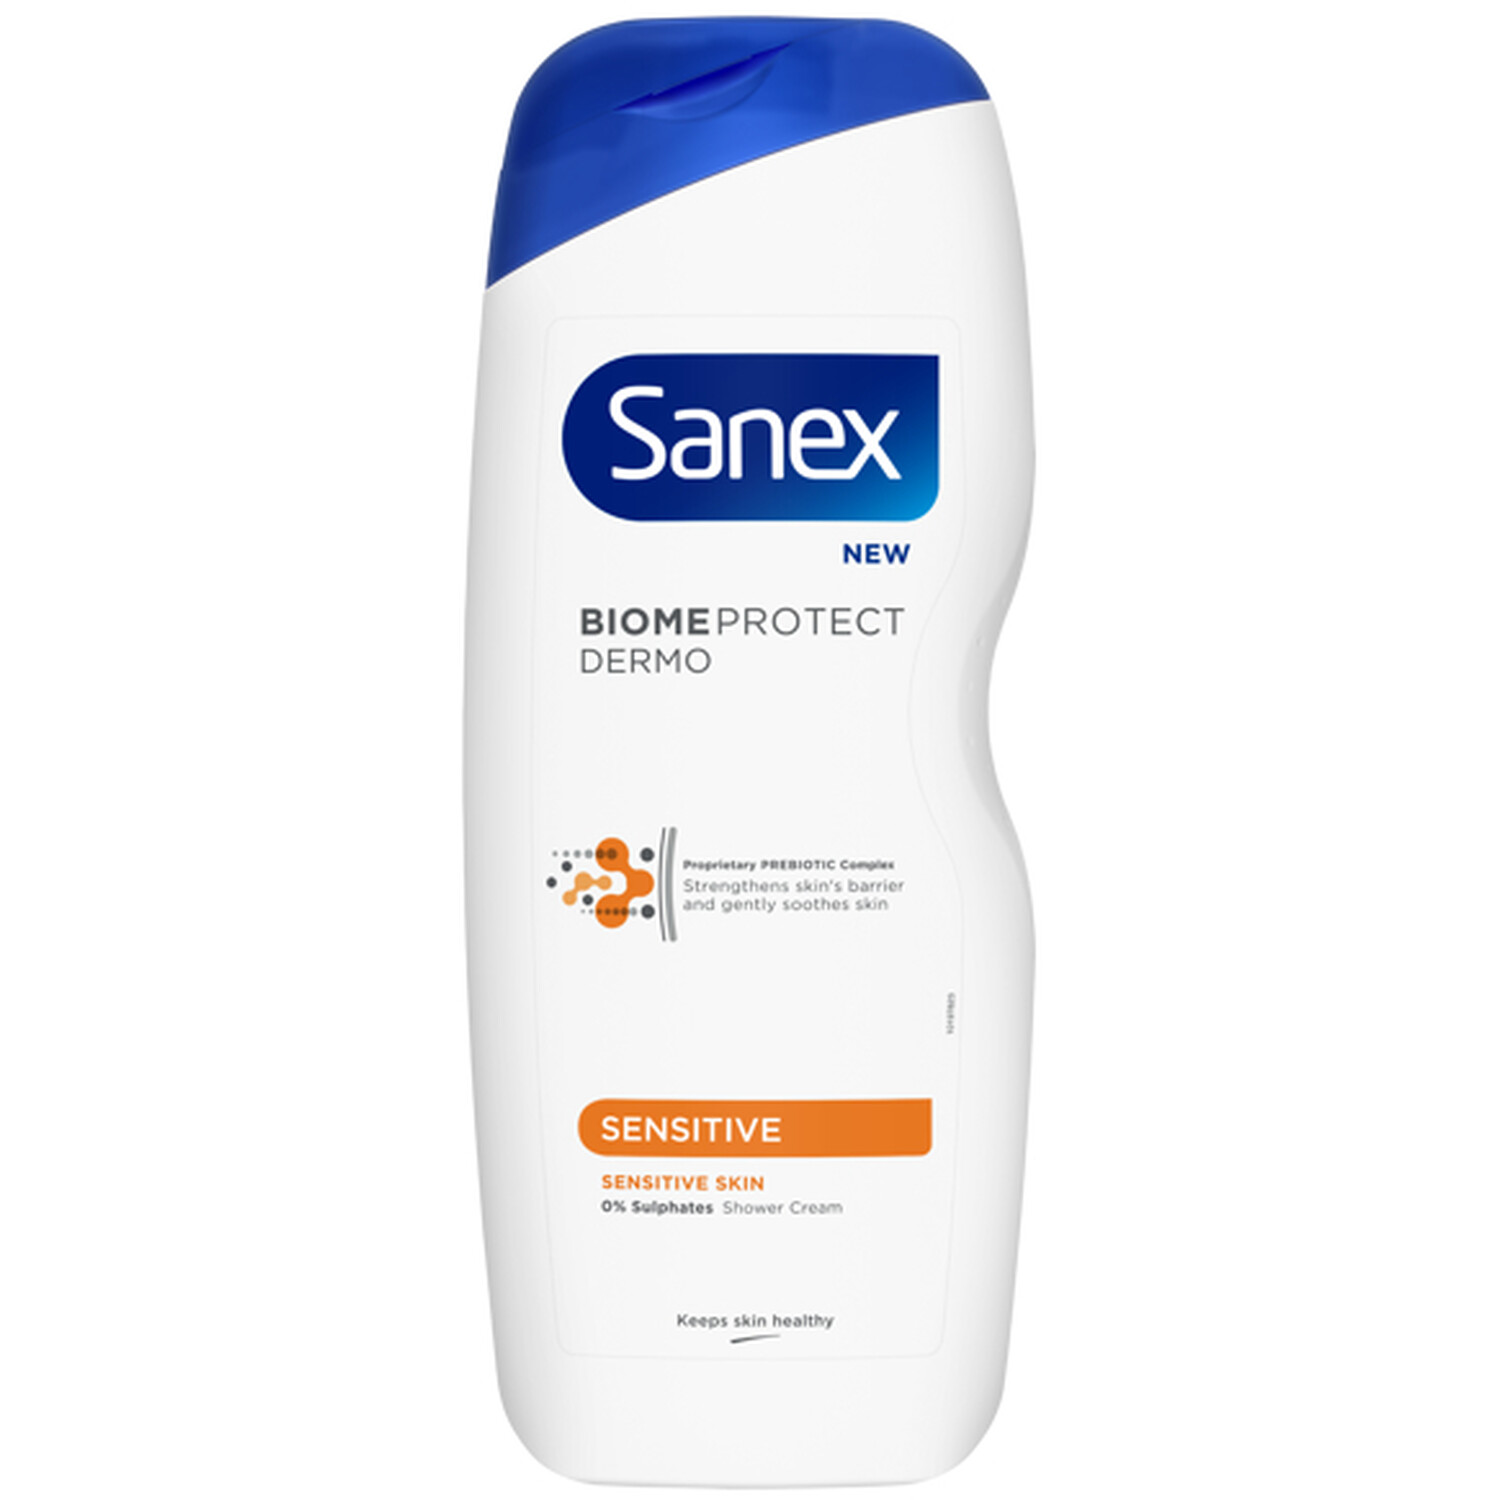 Sanex Biome Protect Dermo Sensitive Shower Cream - White Image